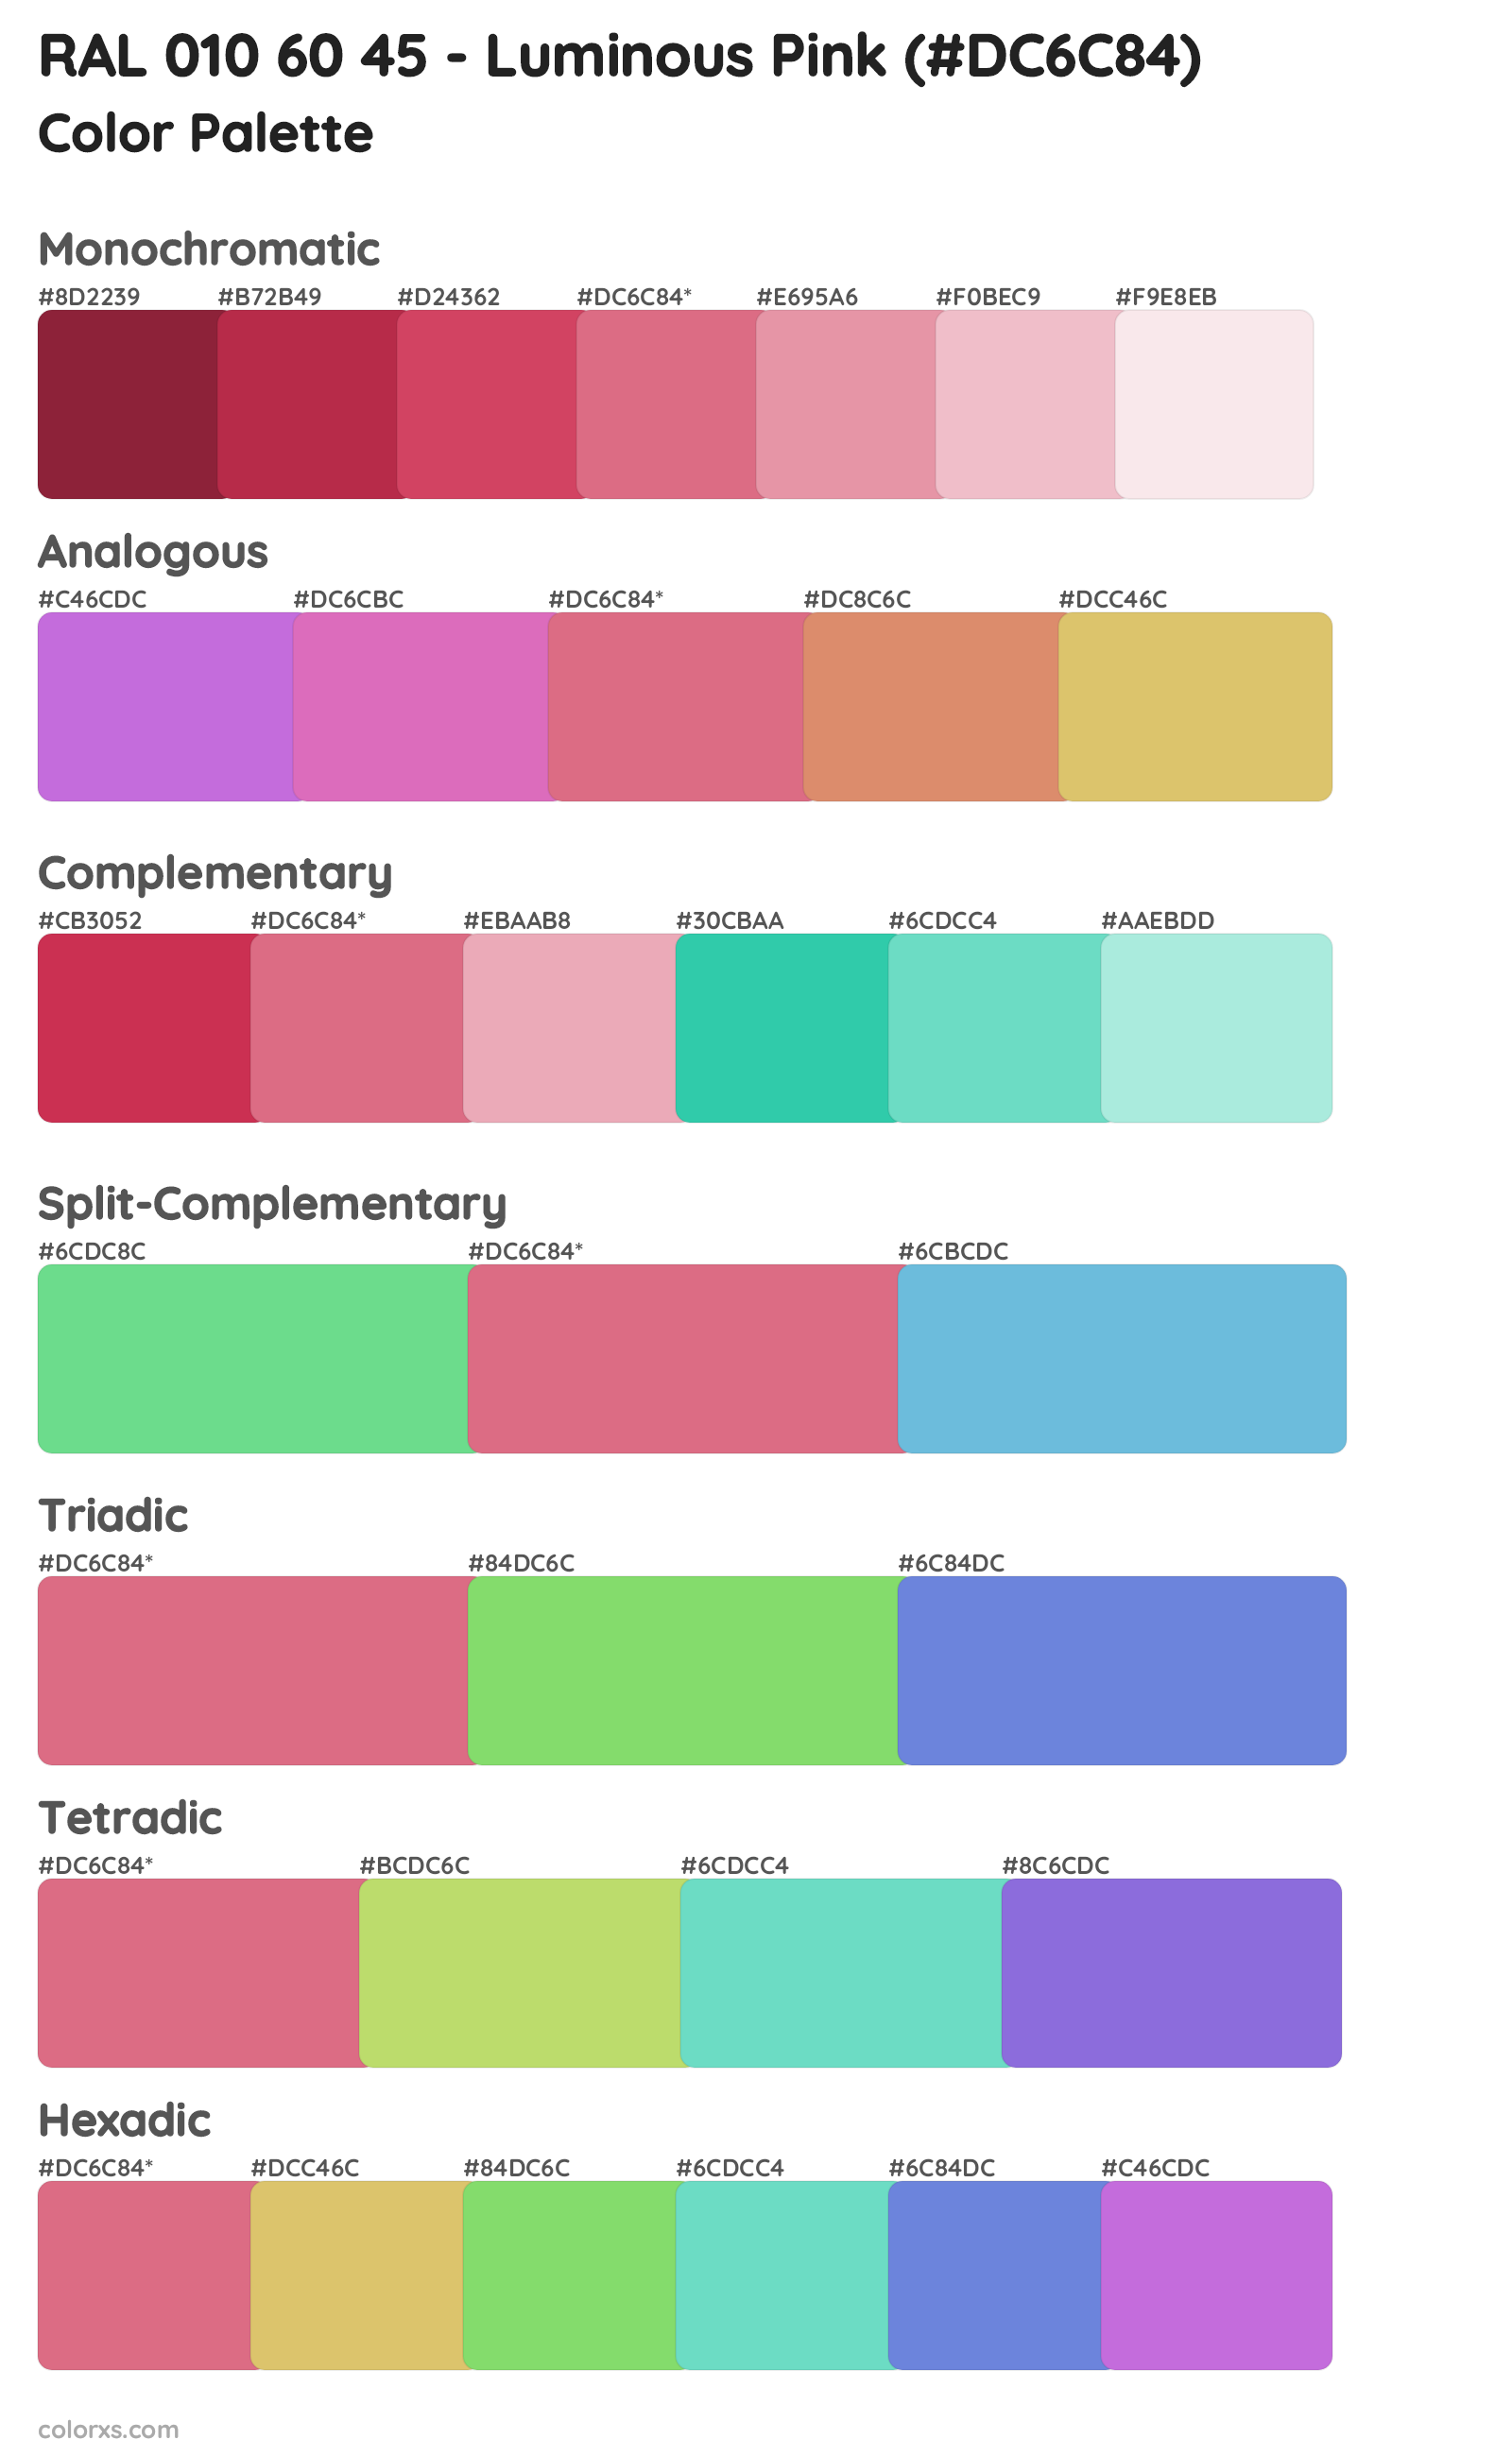 RAL 010 60 45 - Luminous Pink Color Scheme Palettes